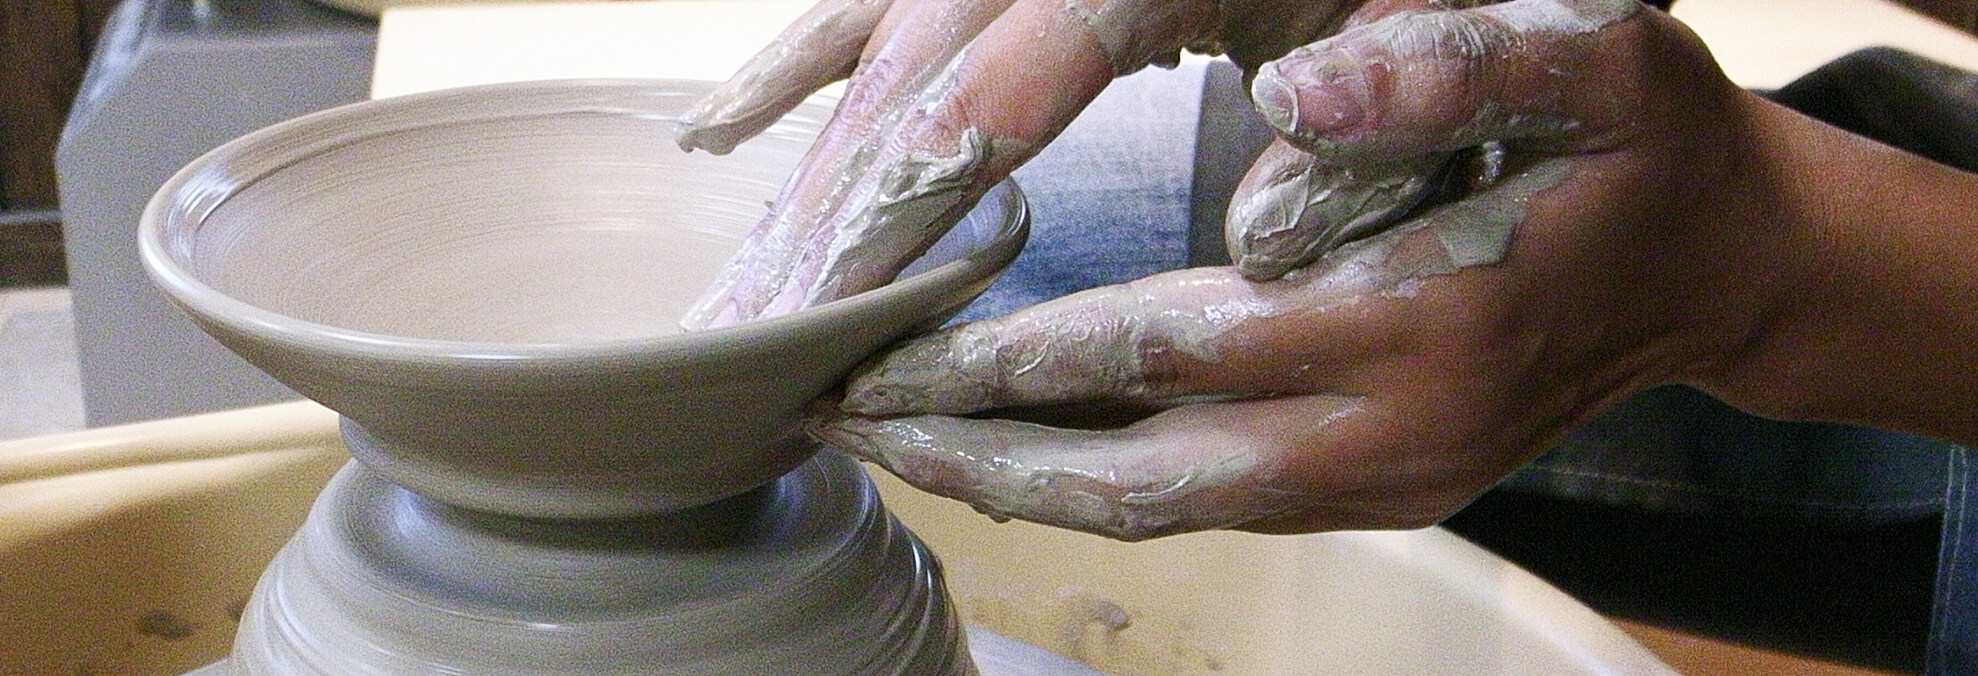 手ひねり作陶をしている画像